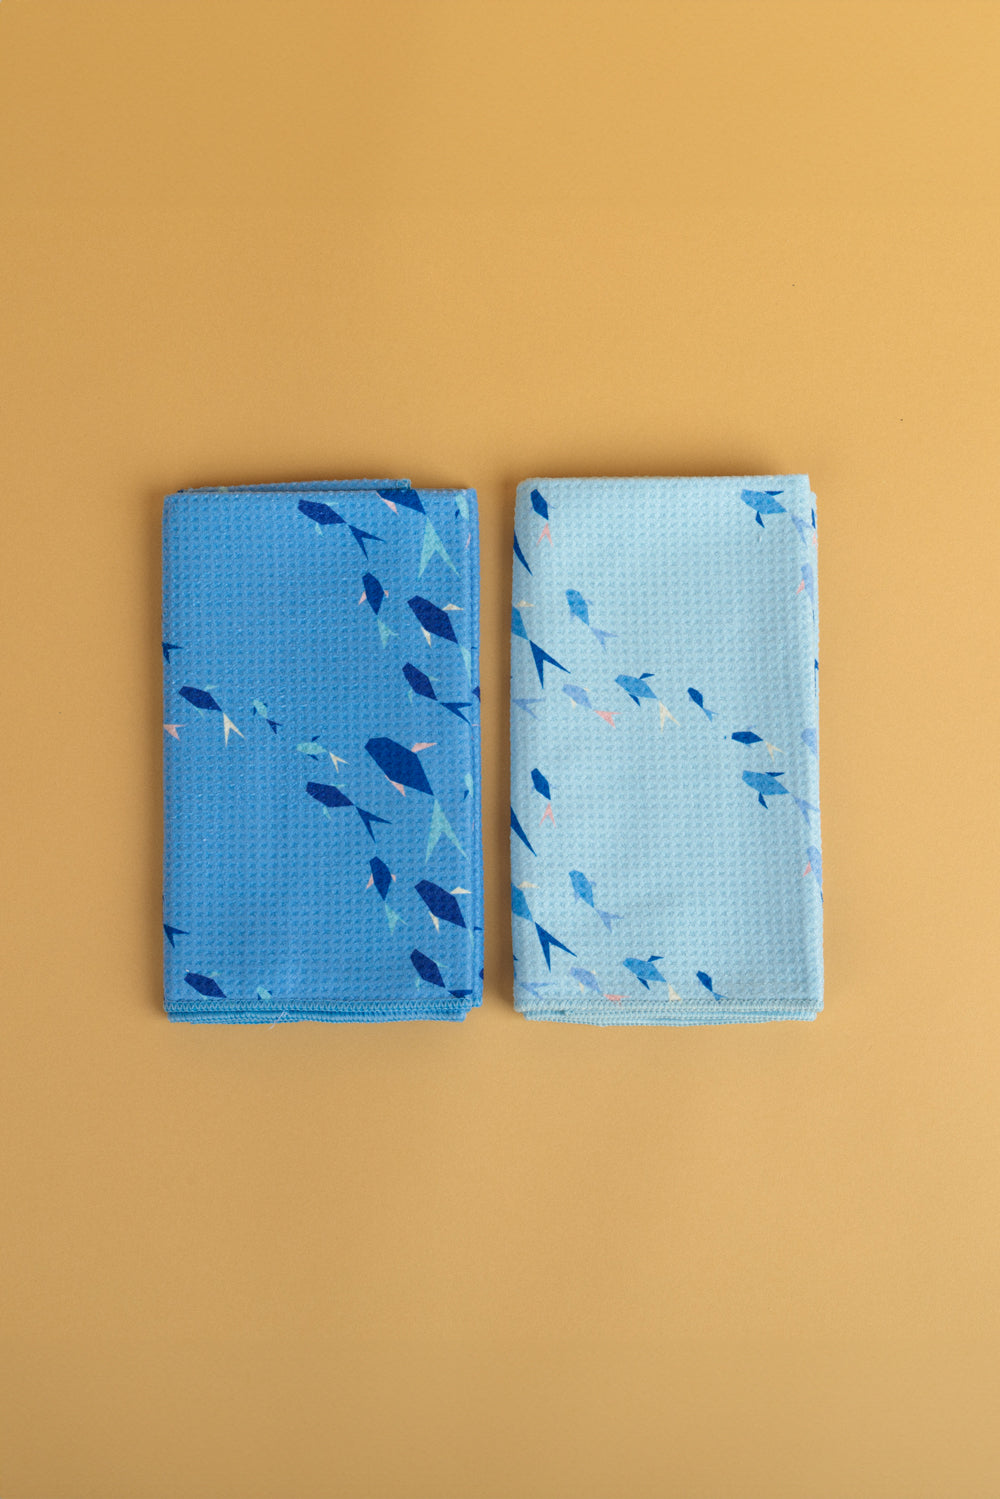 Multipurpose Towel 2 Pack - Sky Origami Fish